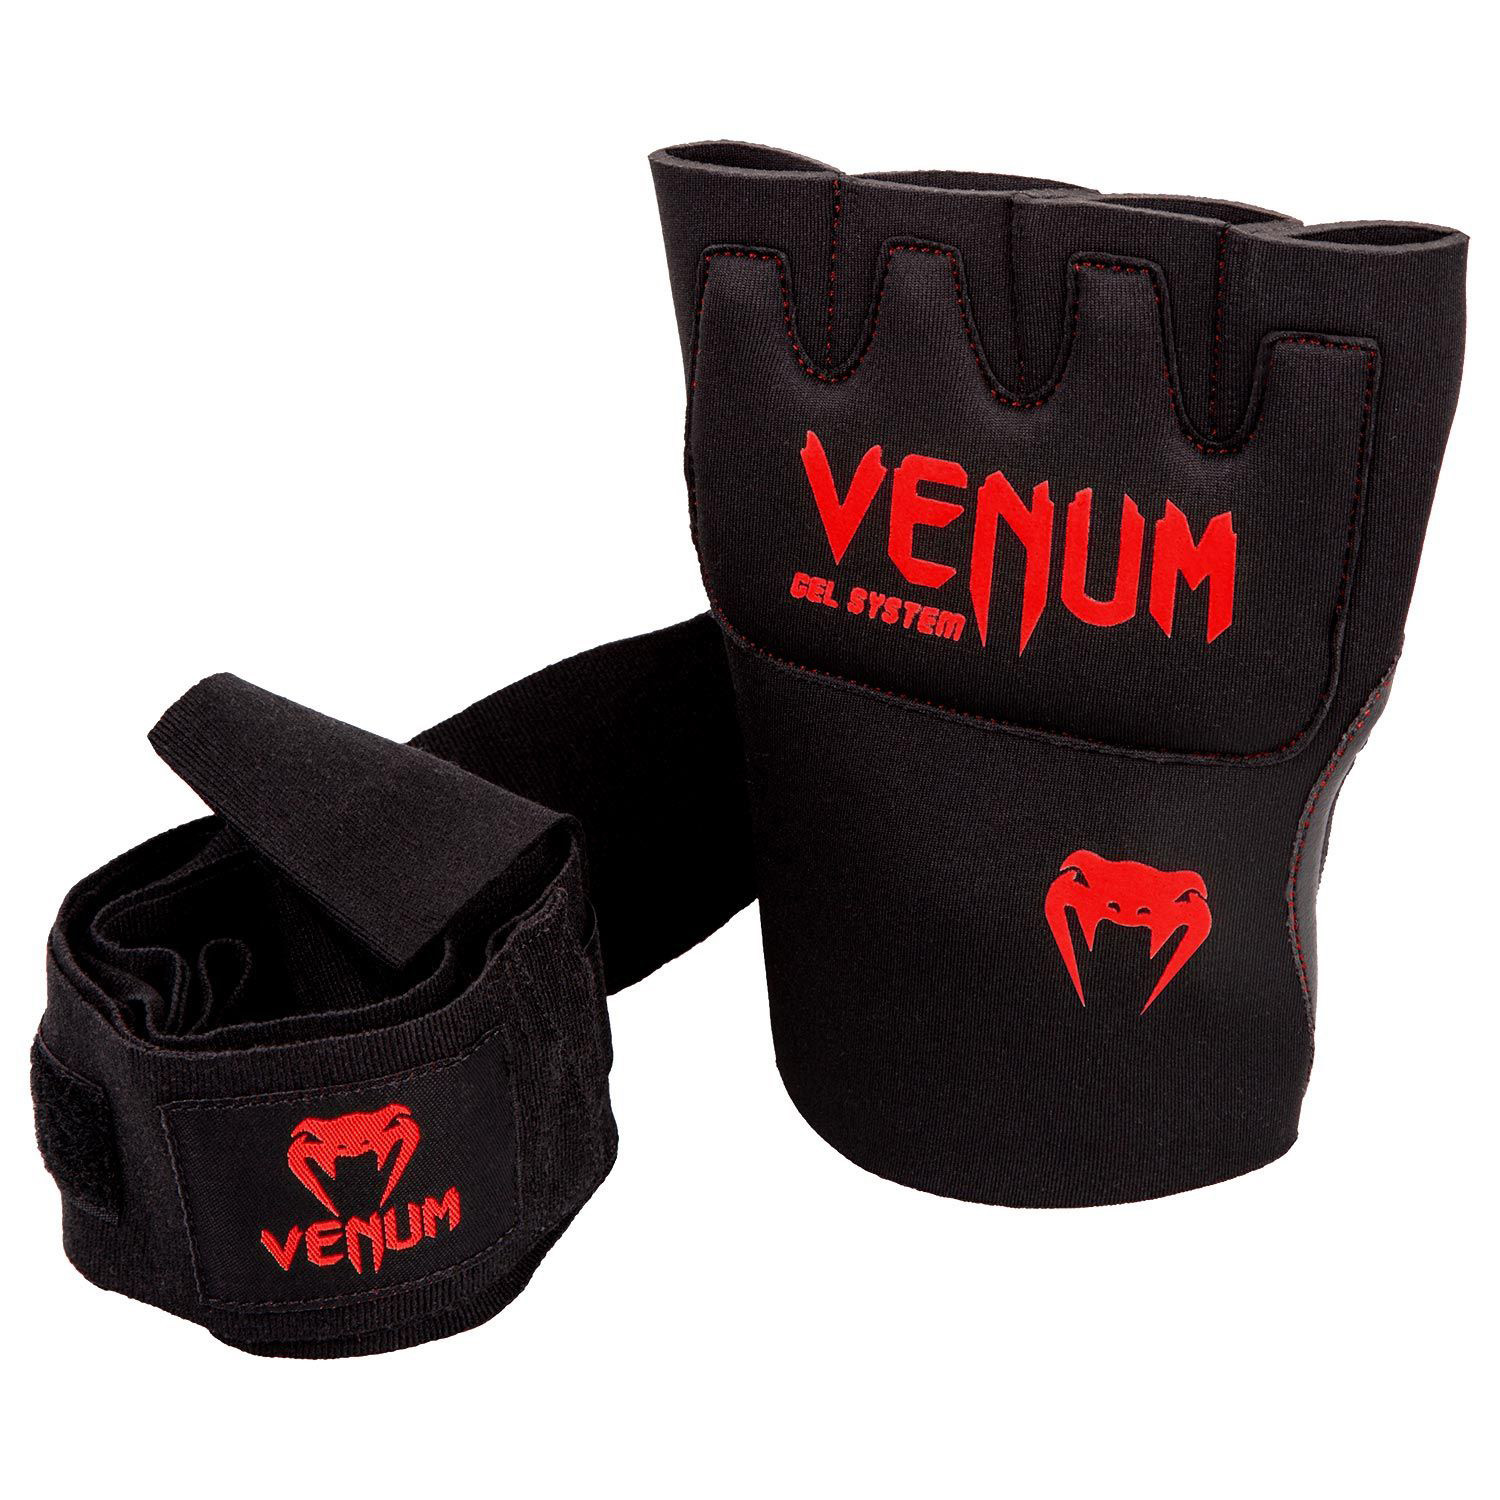 Legion Store - Las vendas Kontact Gel de Venum pueden ser utilizadas para  entrenamientos de boxeo, muay thai, MMA o para proteger tus manos de  trabajo liviano en el gimnasio. Encuéntralas en